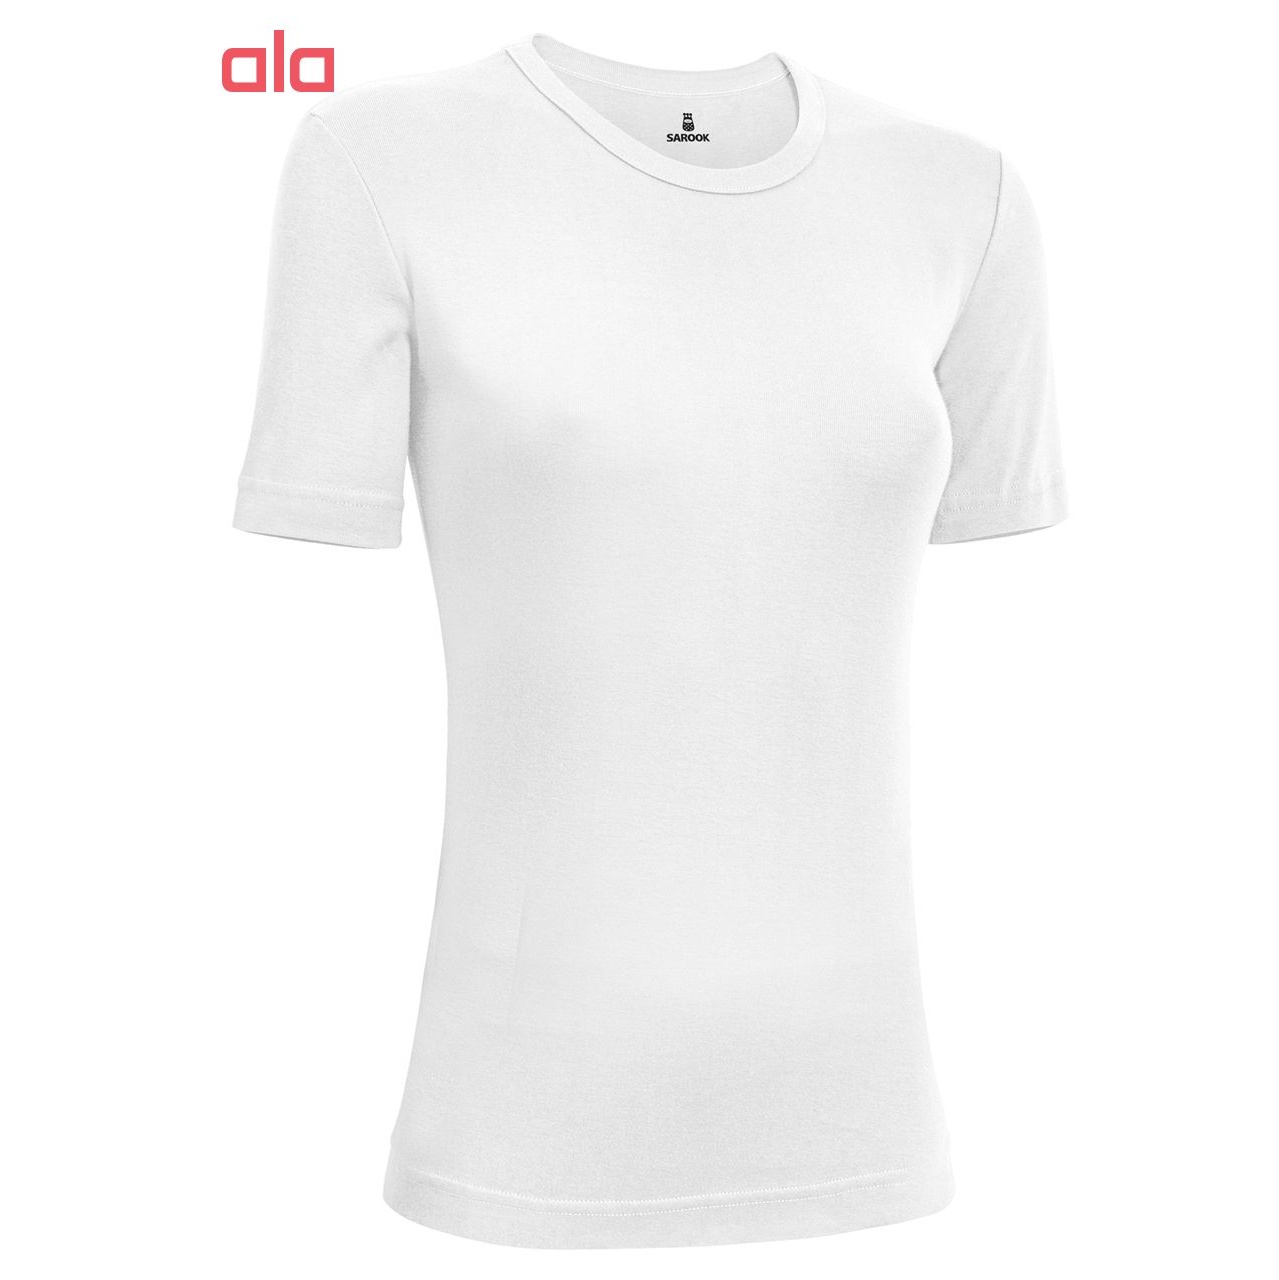 تی شرت زنانه ساروک مدل TZYUF11 رنگ سفید